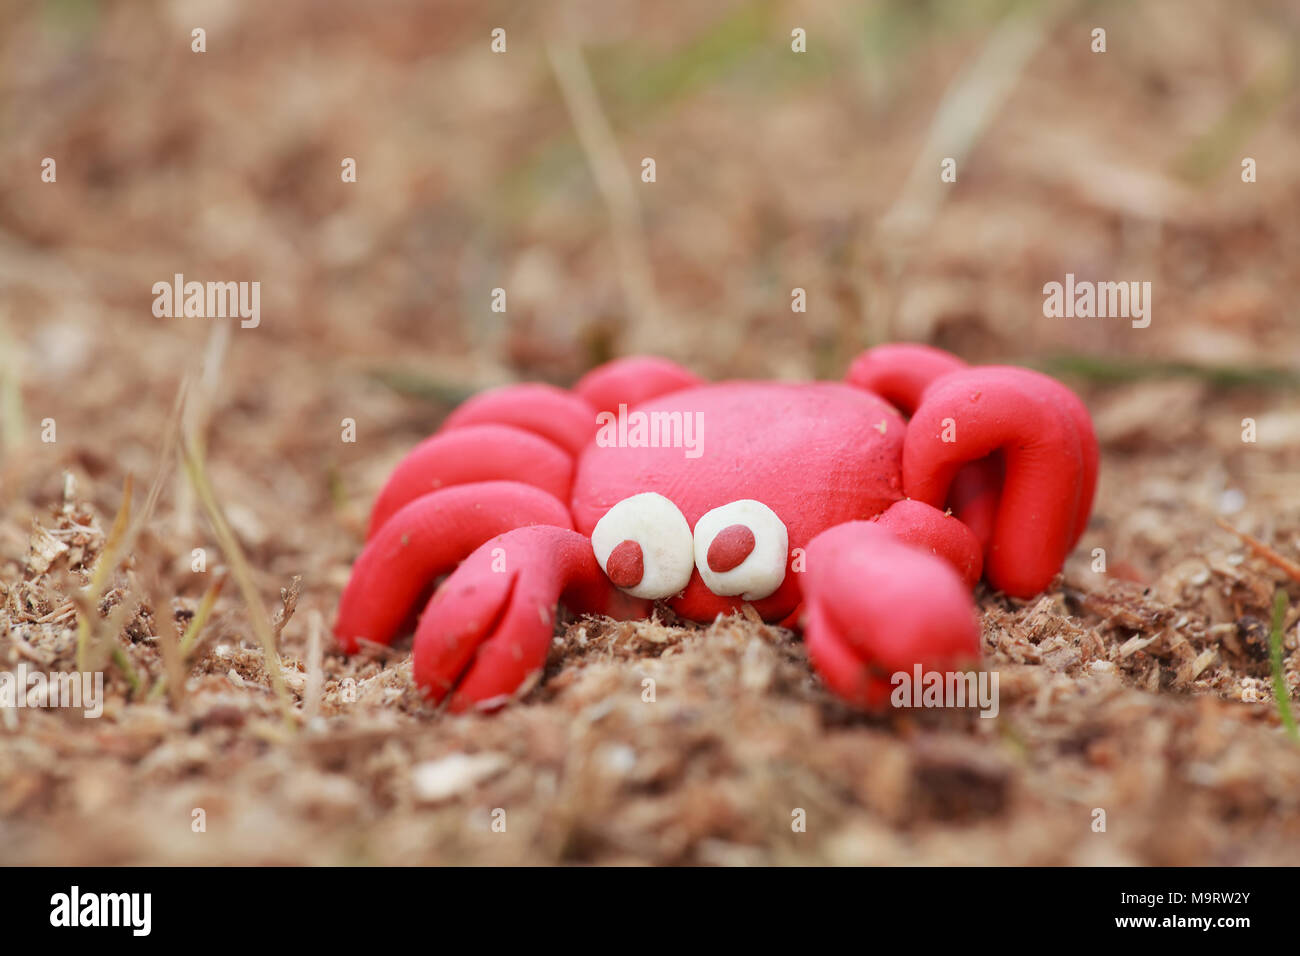 Monde - Pâte à modeler maison petit crabe rouge se trouve sur la sciure, imitant le sable, selective focus on head Banque D'Images